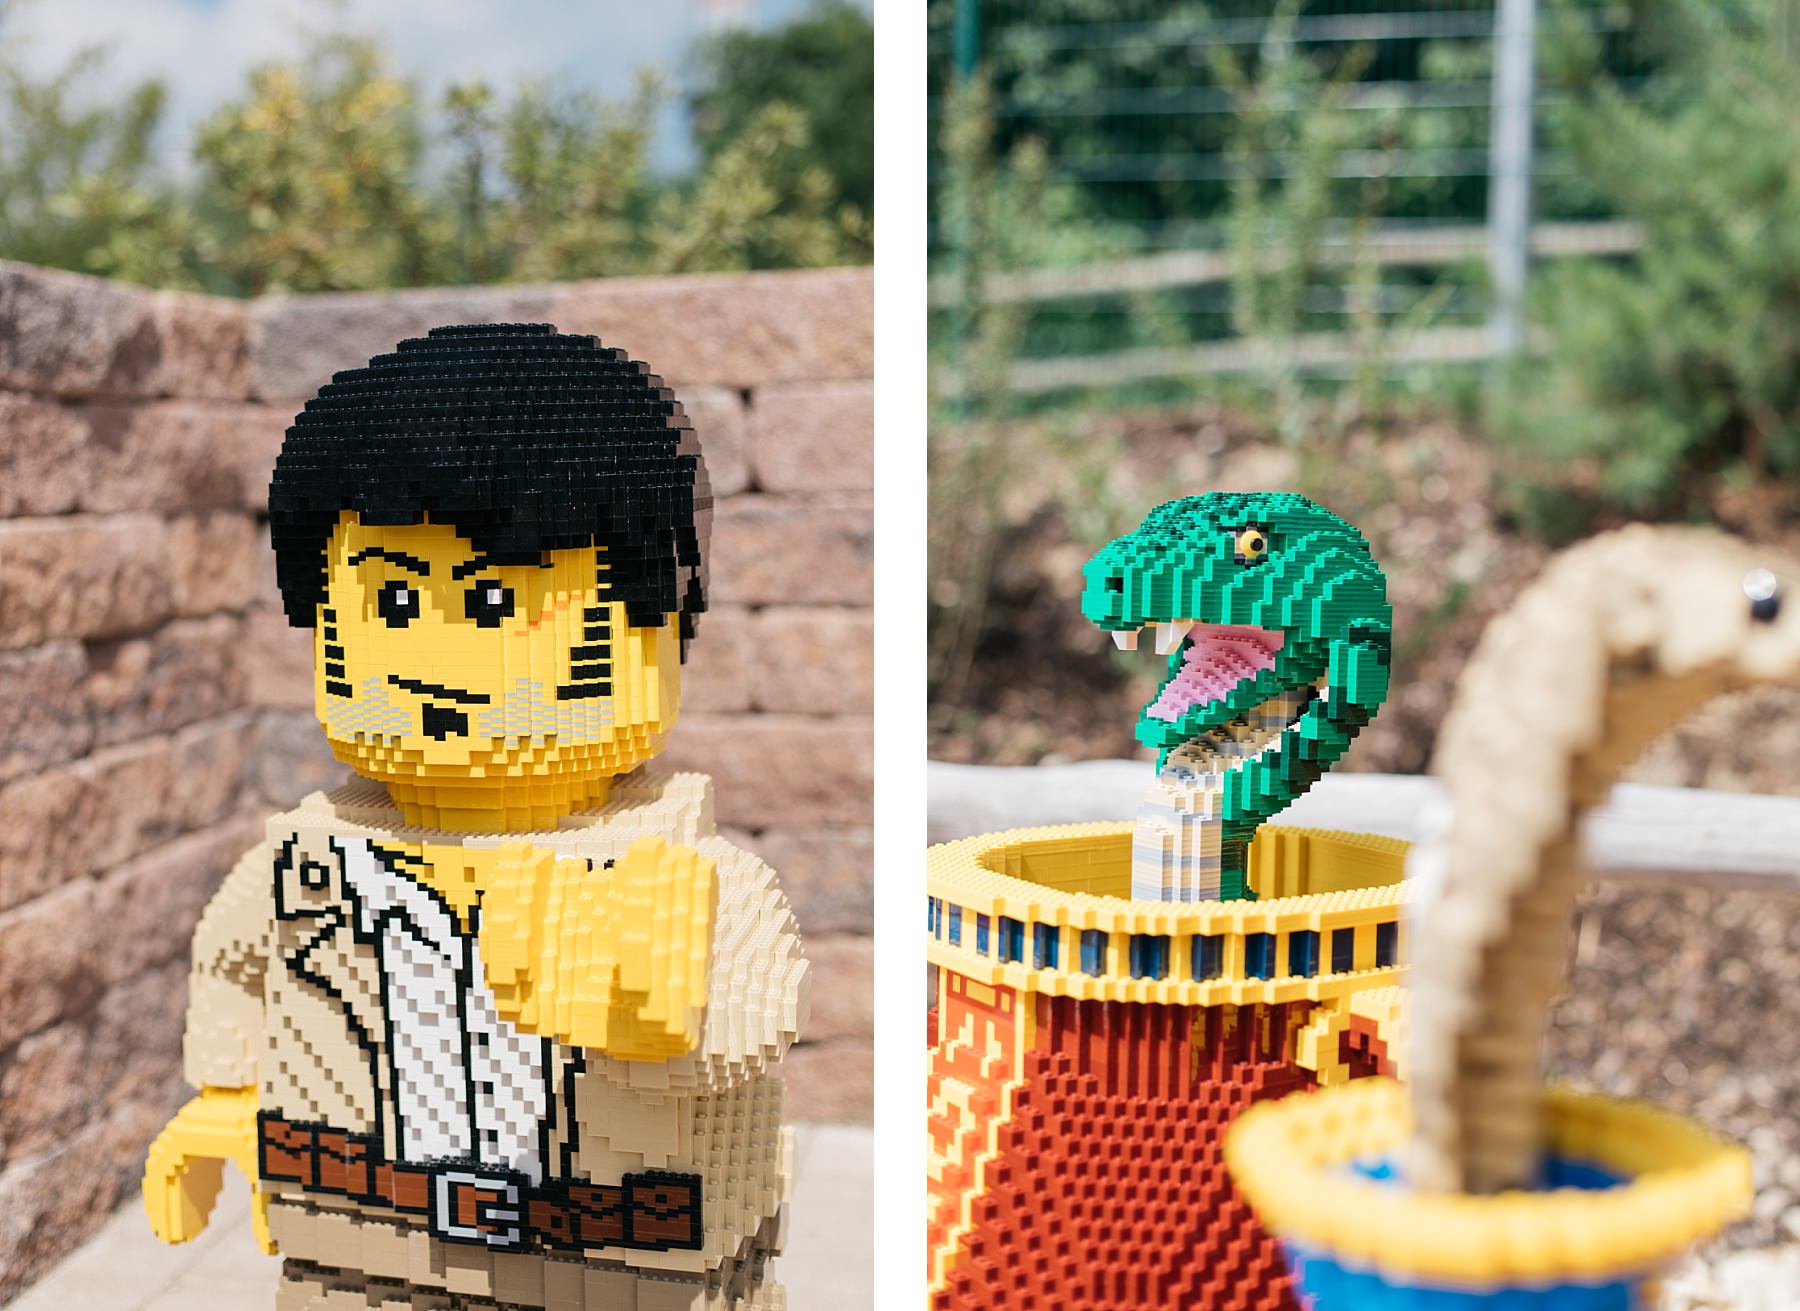 Legoland - 57 millions de briques Lego 53